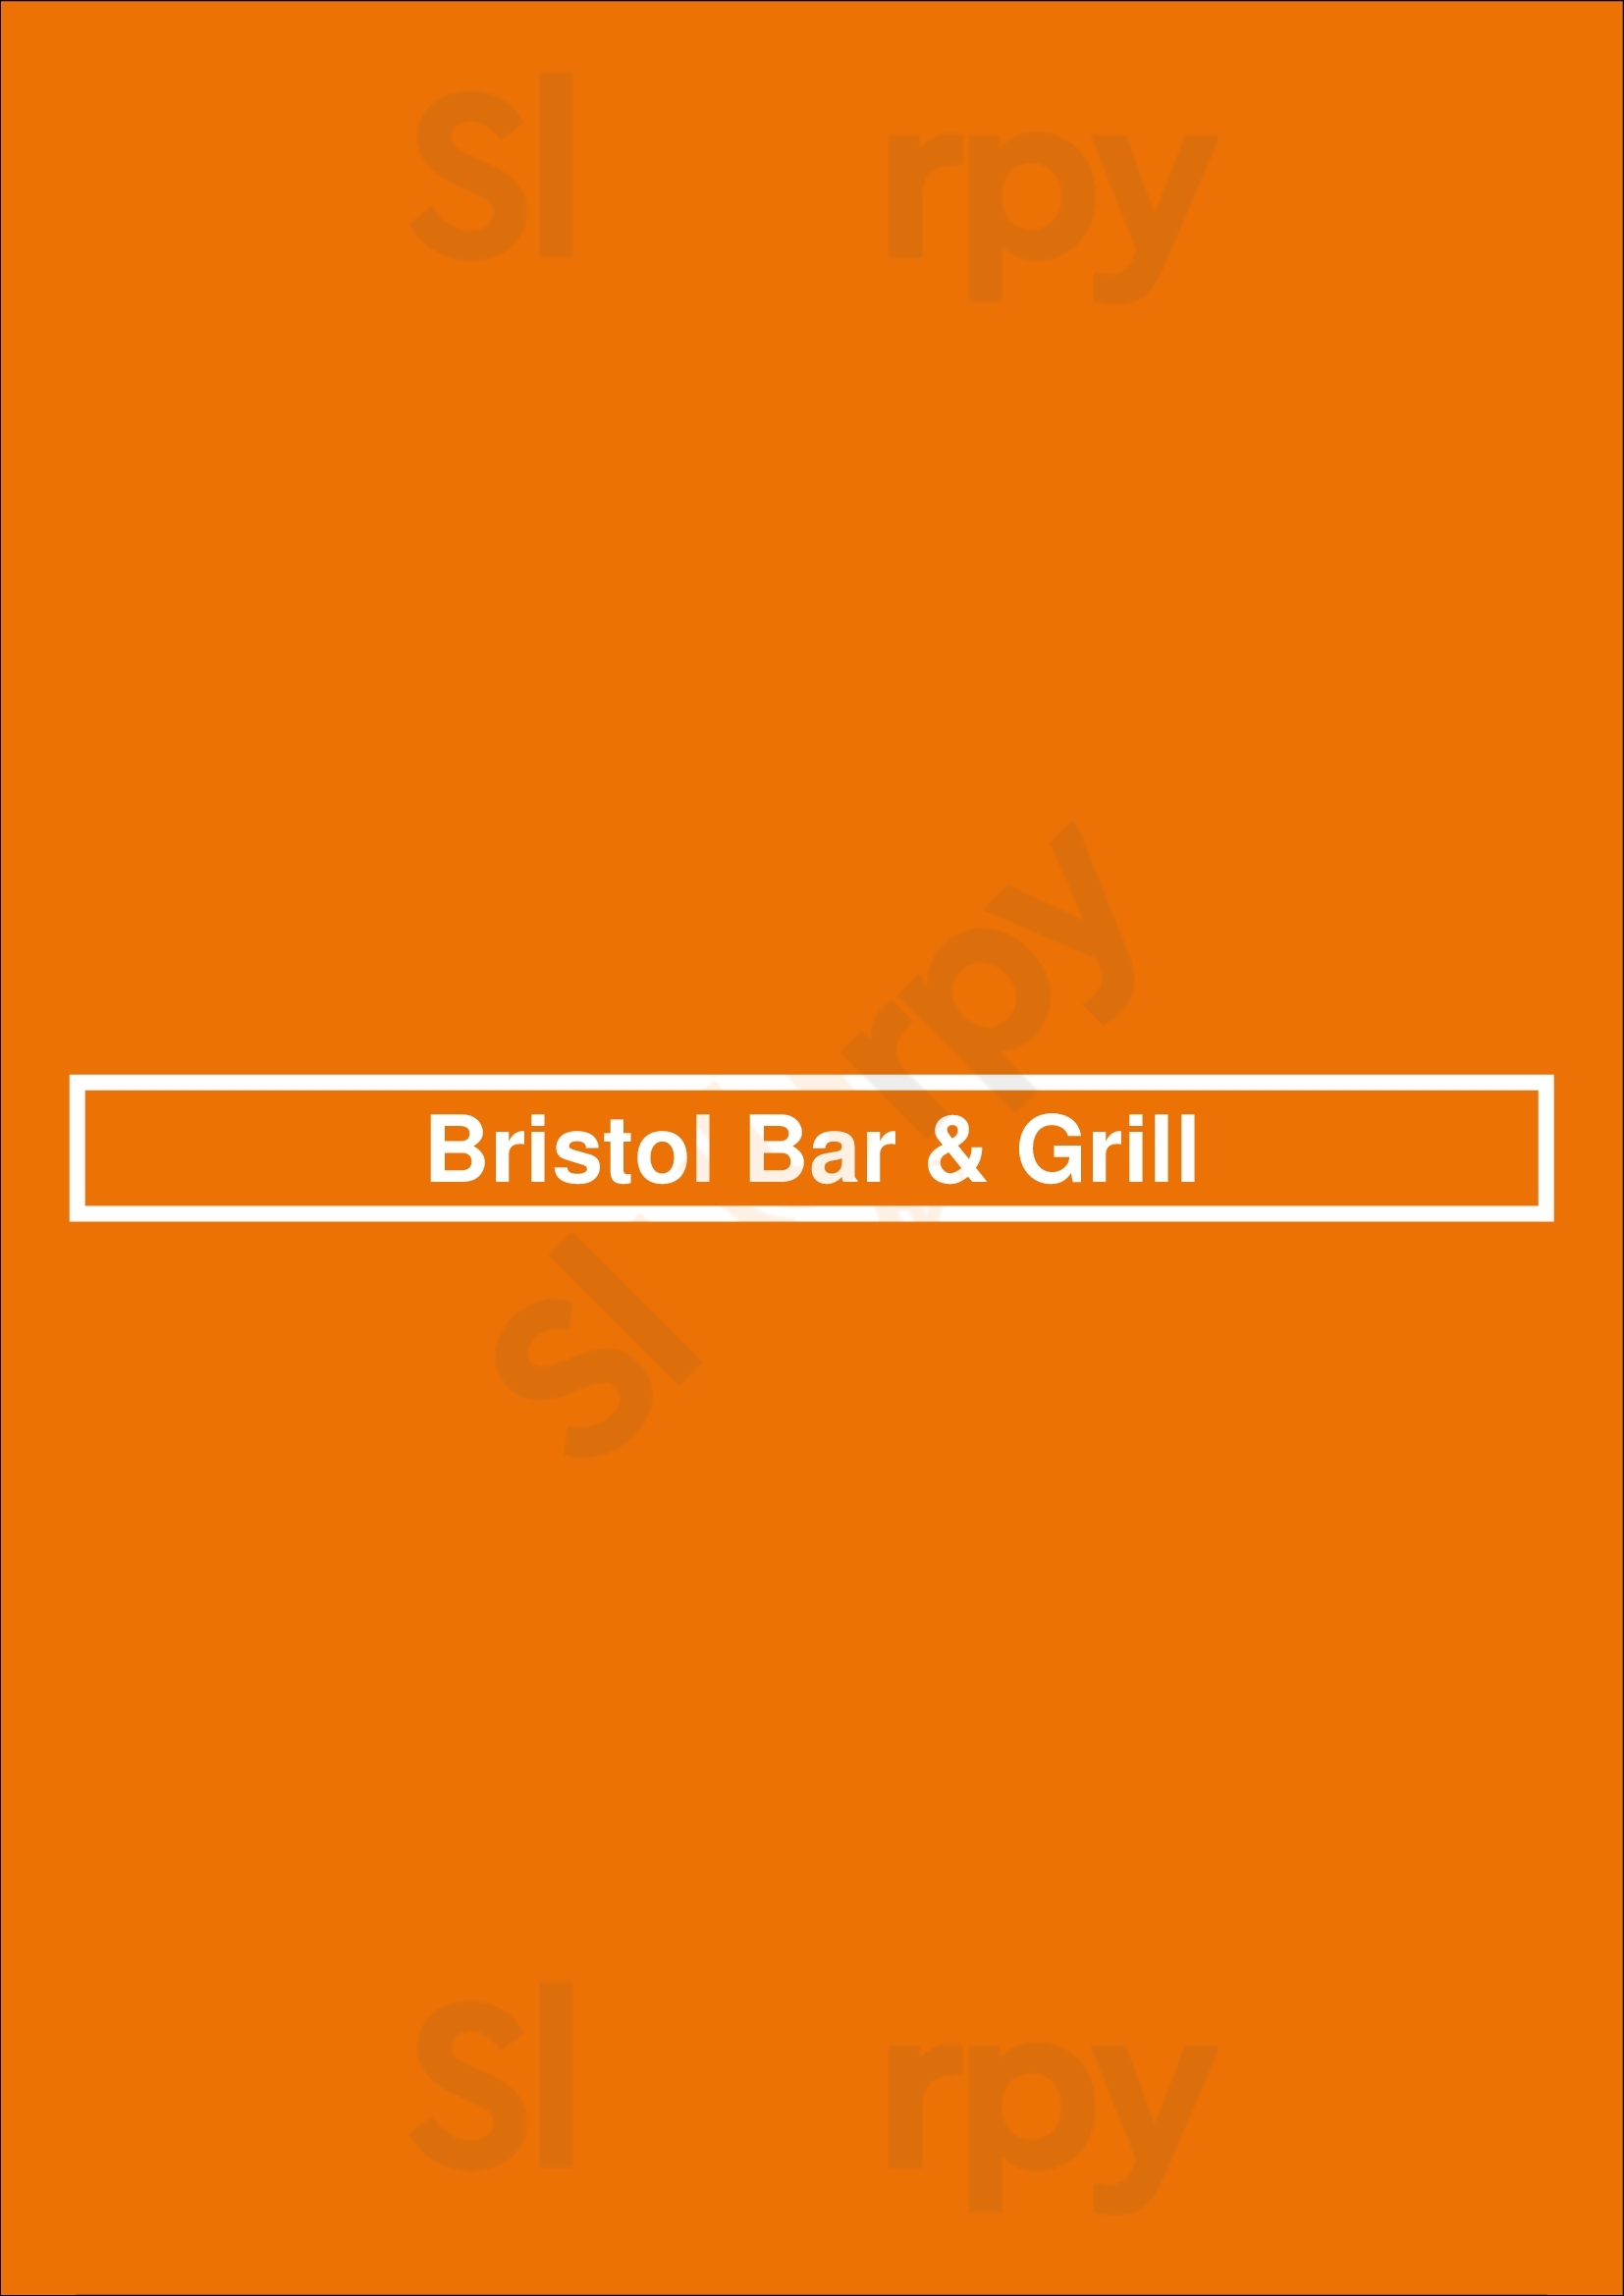 Bristol Bar & Grill Dallas Menu - 1